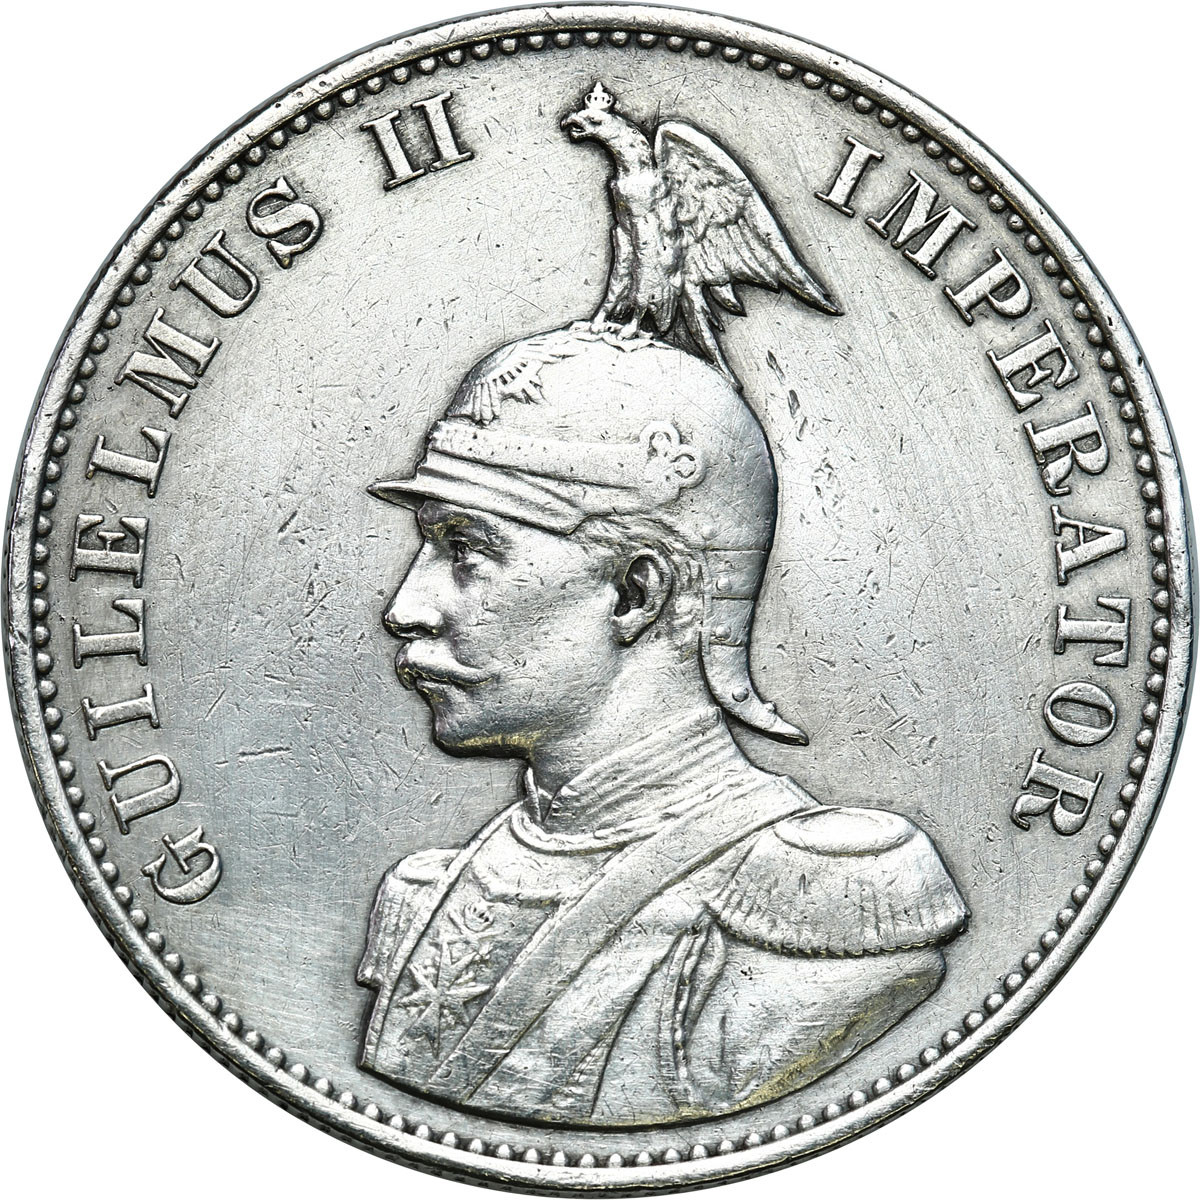 Niemcy, Afryka wschodnia. Wilhelm II (1888-1918). 2 rupie 1893 - RZADKIE